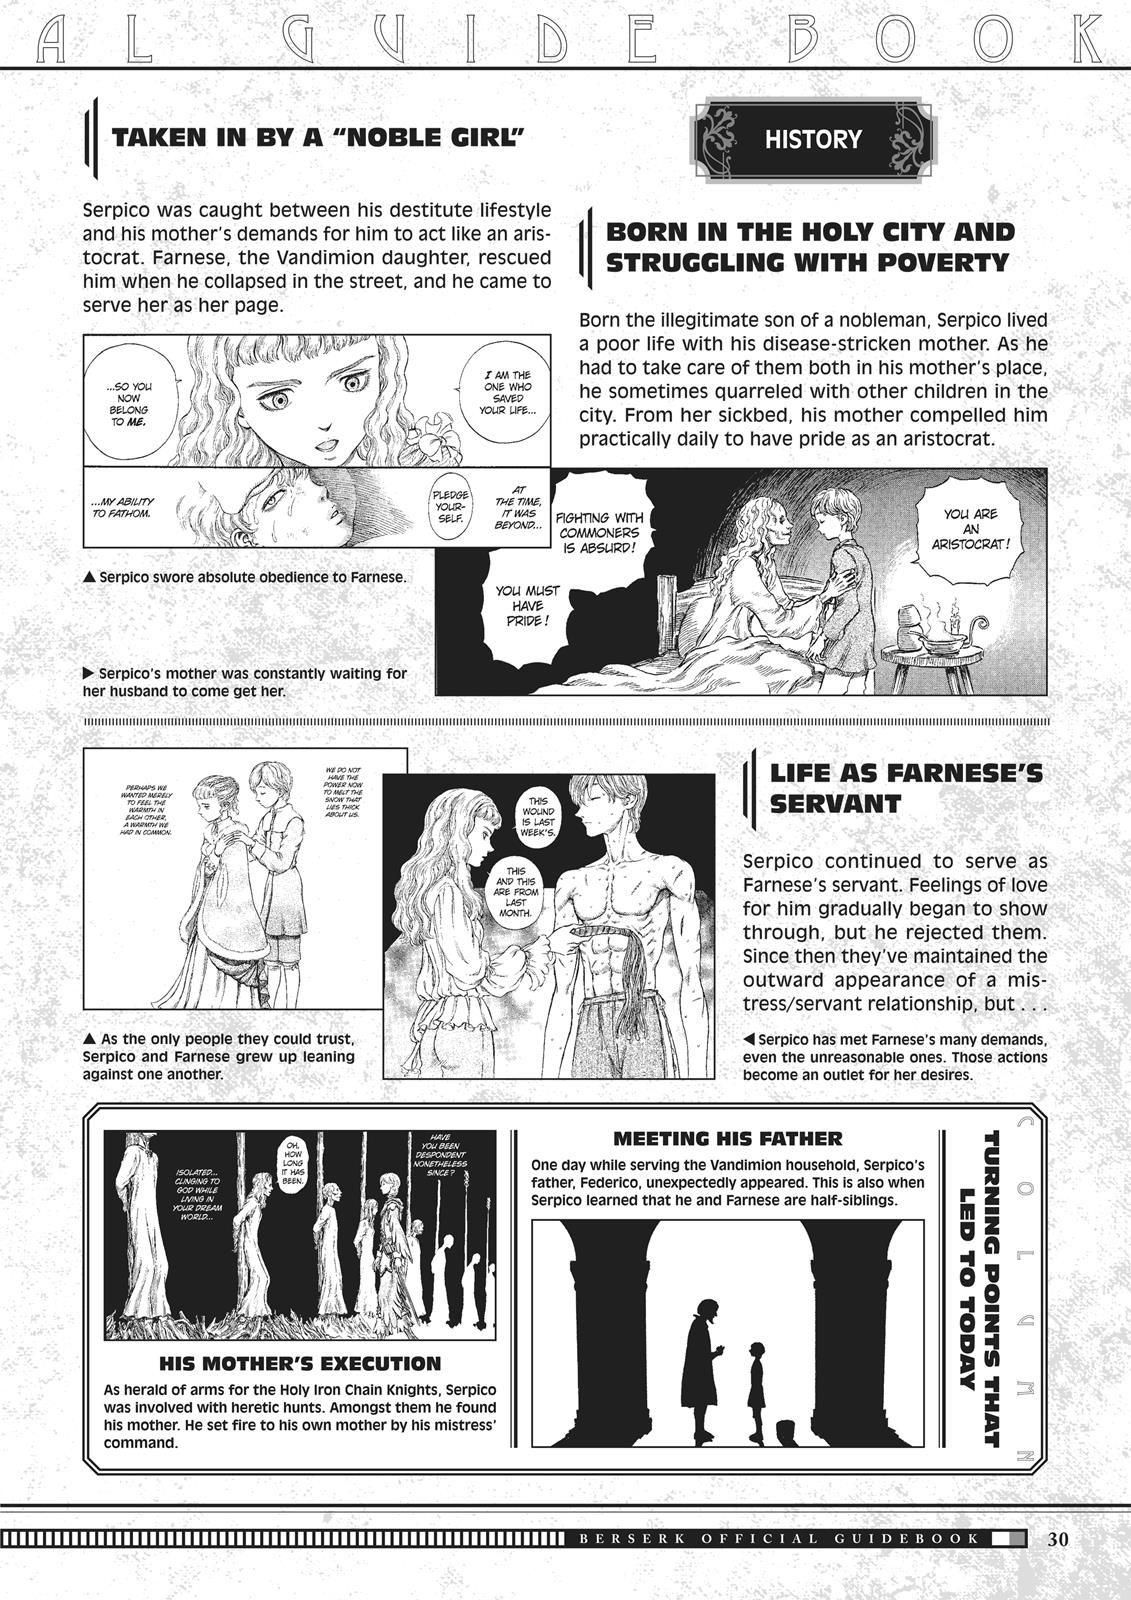 Berserk Manga Chapter 350.5 image 030